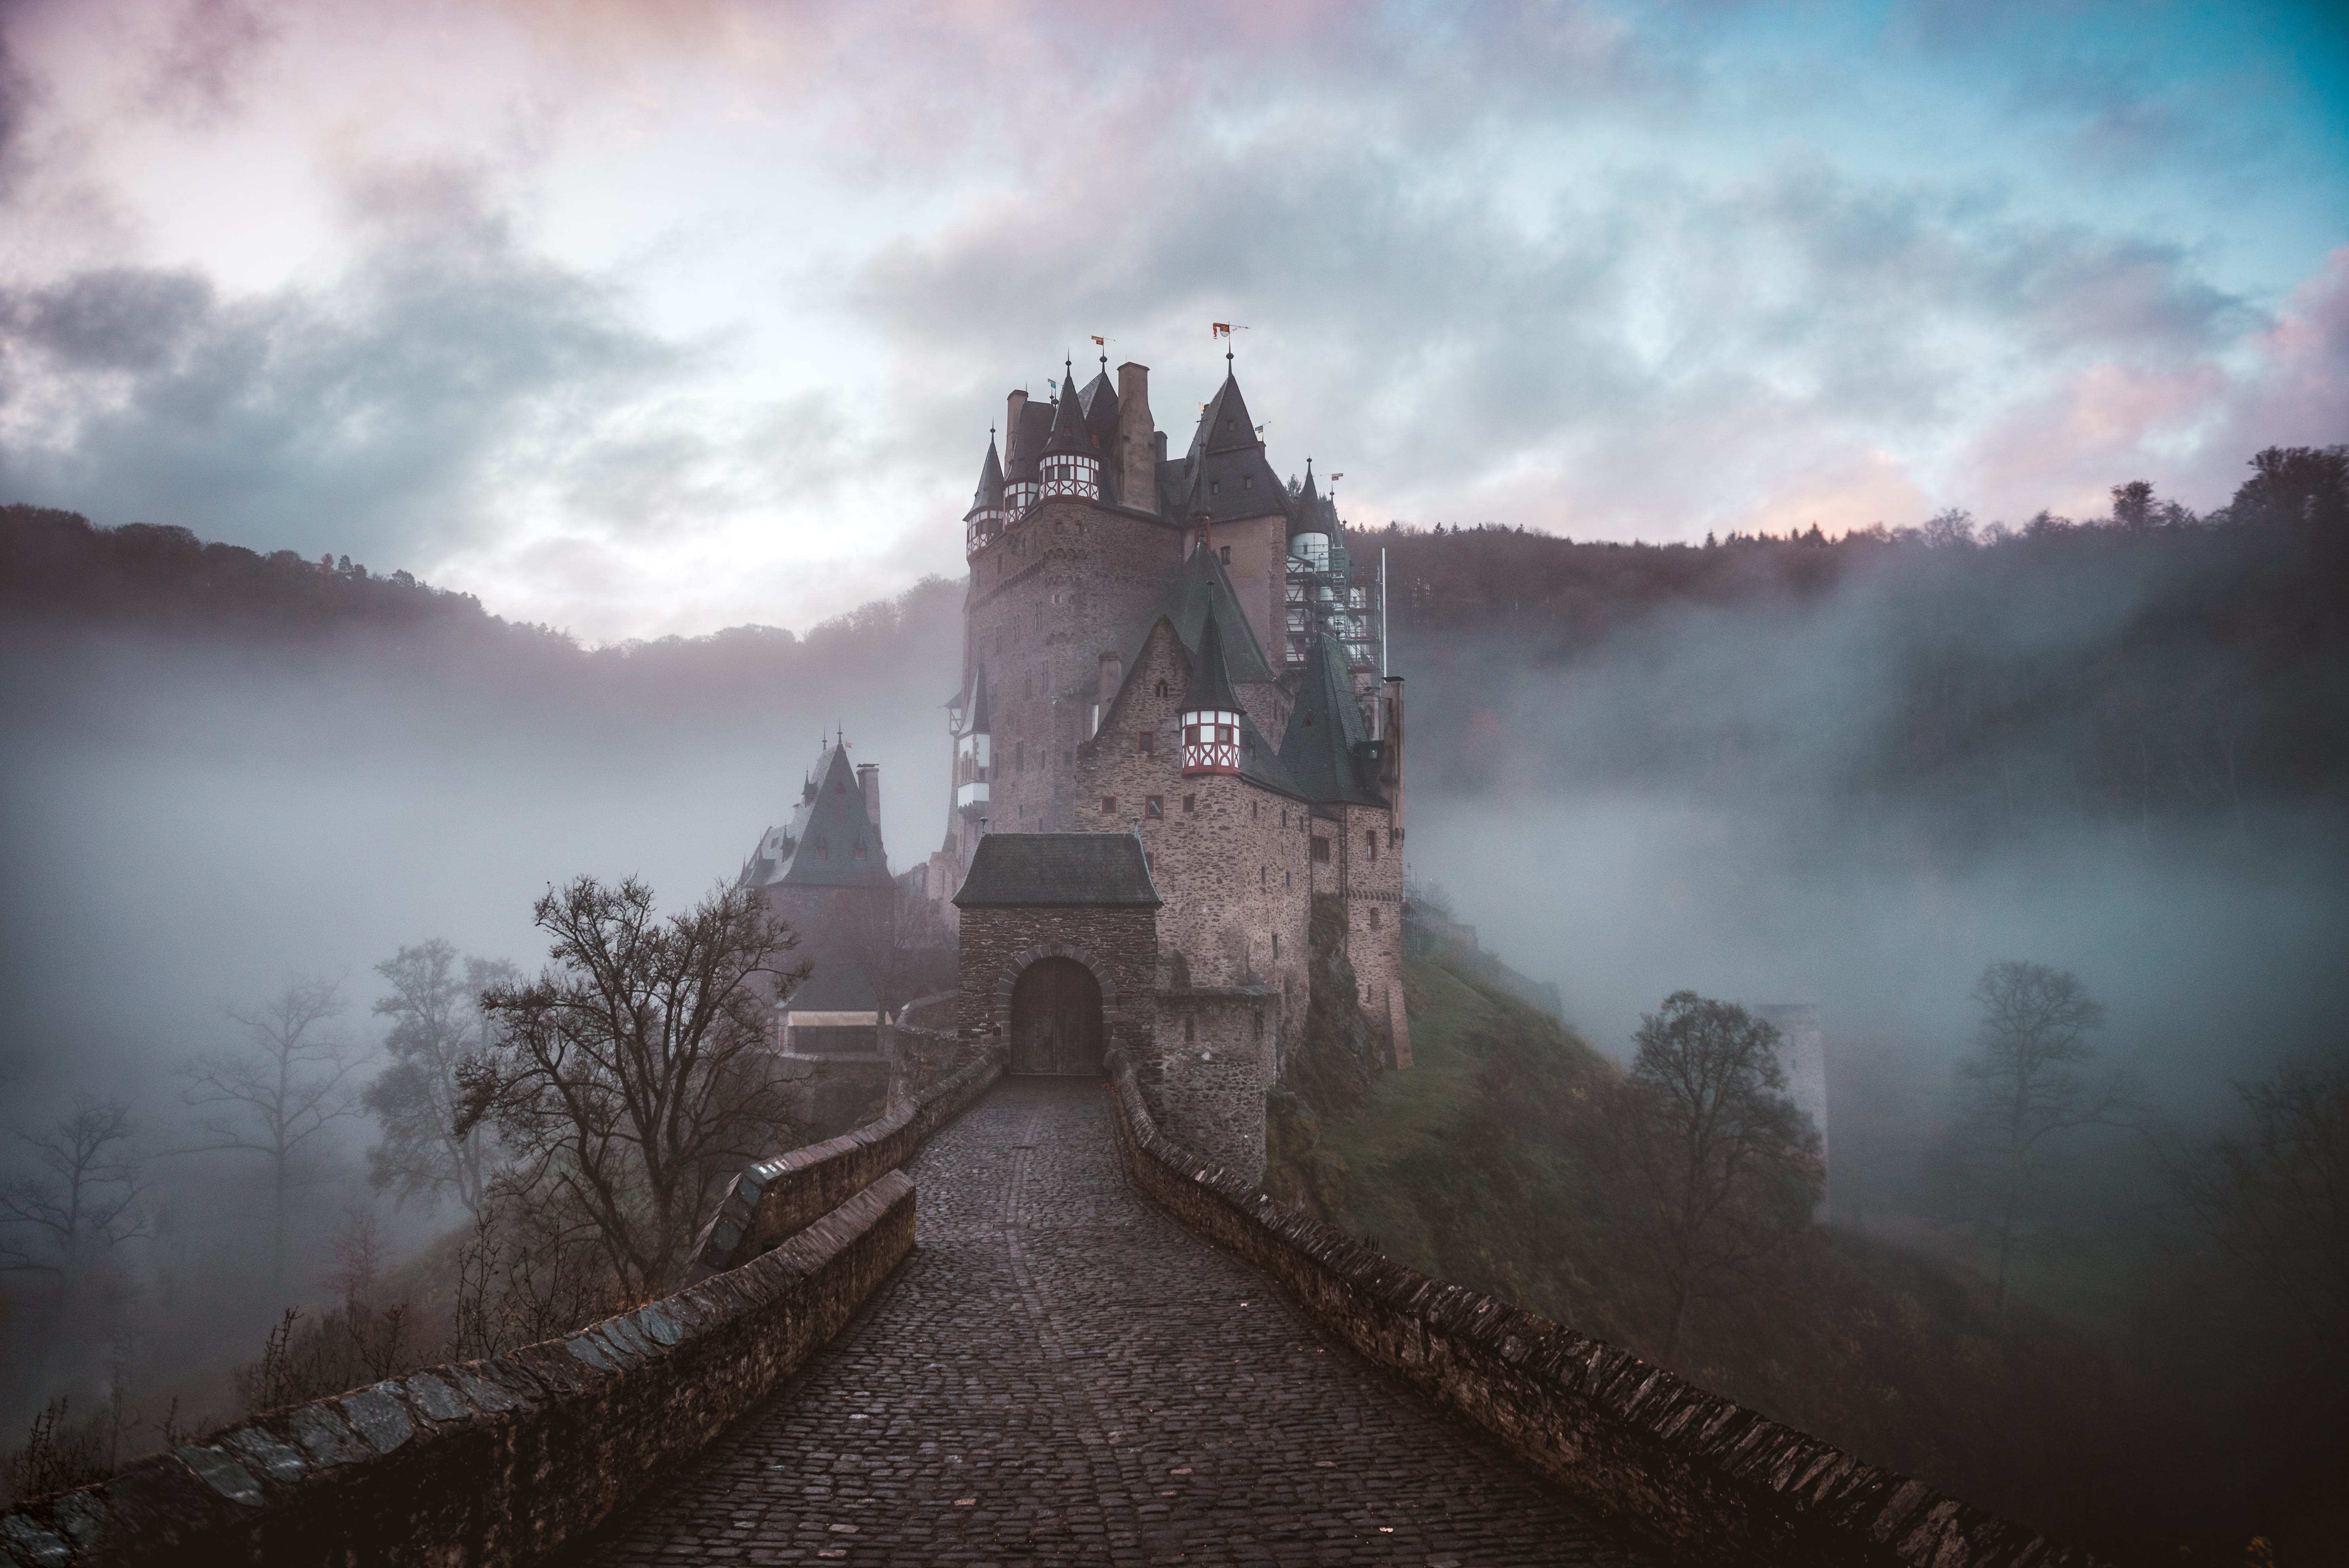 Castle in mist